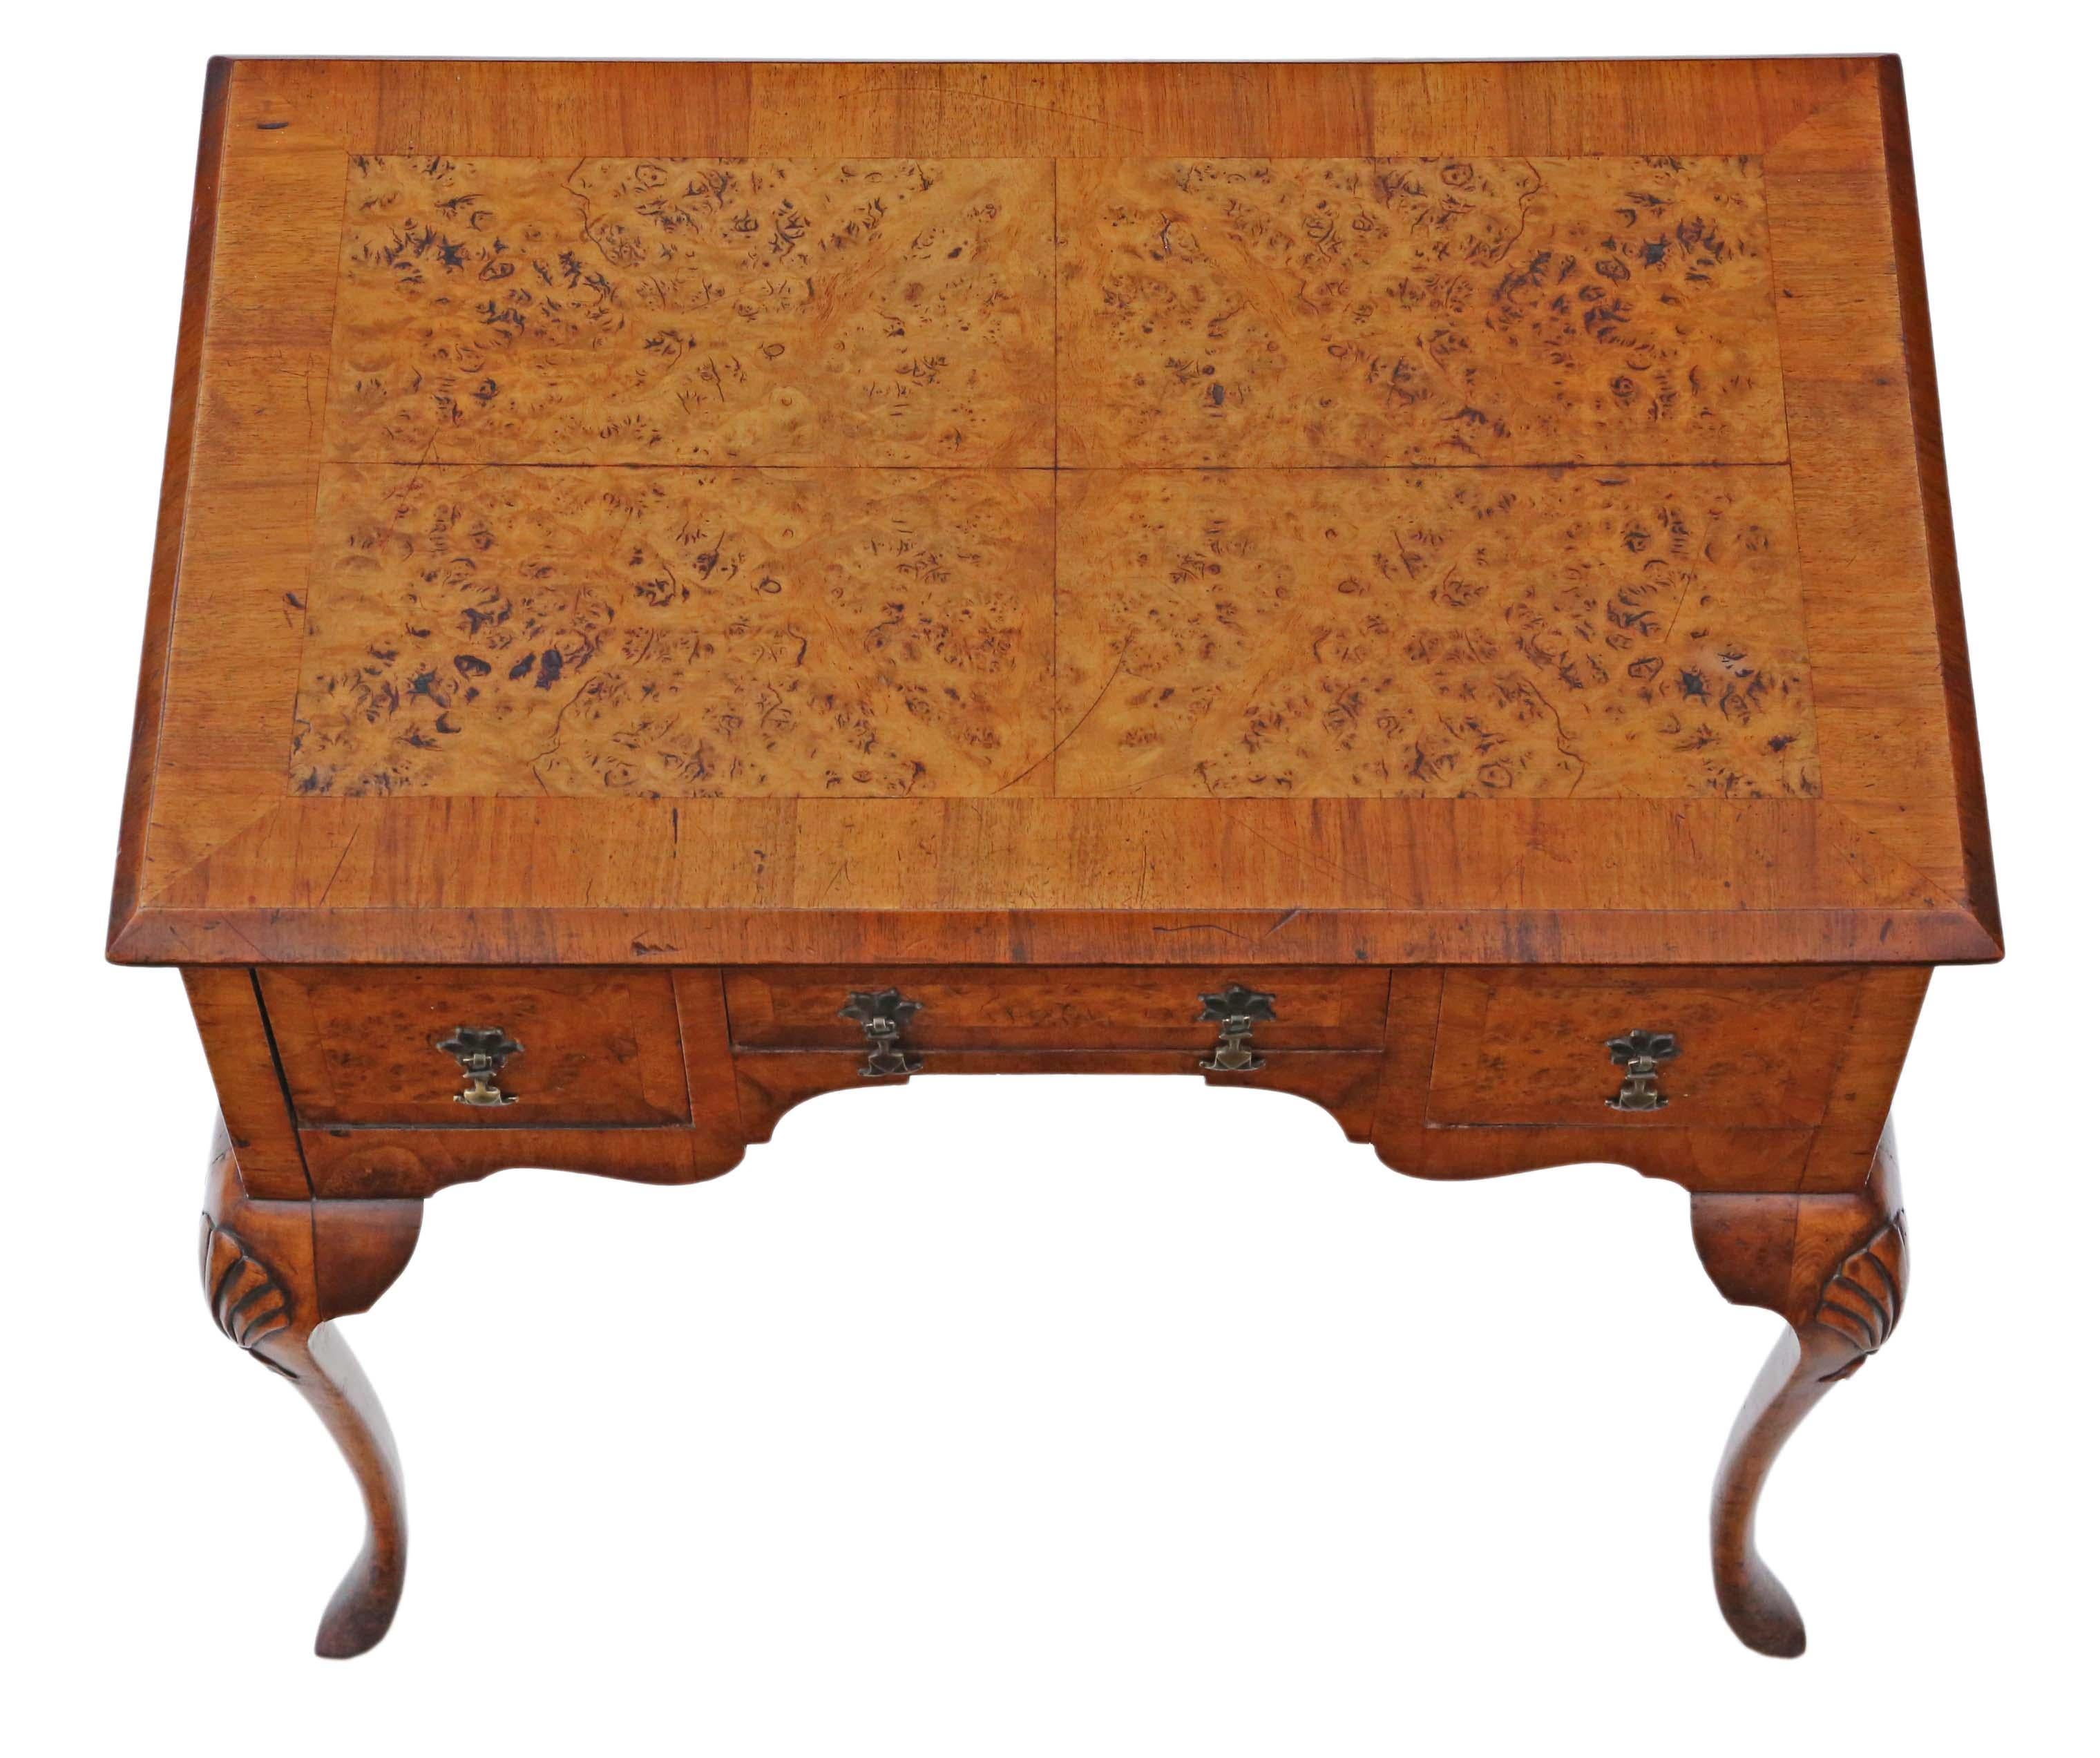 Fabriquée vers 1920, cette table basse en noyer est une pièce polyvalente qui peut être utilisée comme table d'écriture, table d'appoint ou coiffeuse. C'est un bel exemple de design néo-géorgien.

Robuste et stable, il ne présente pas